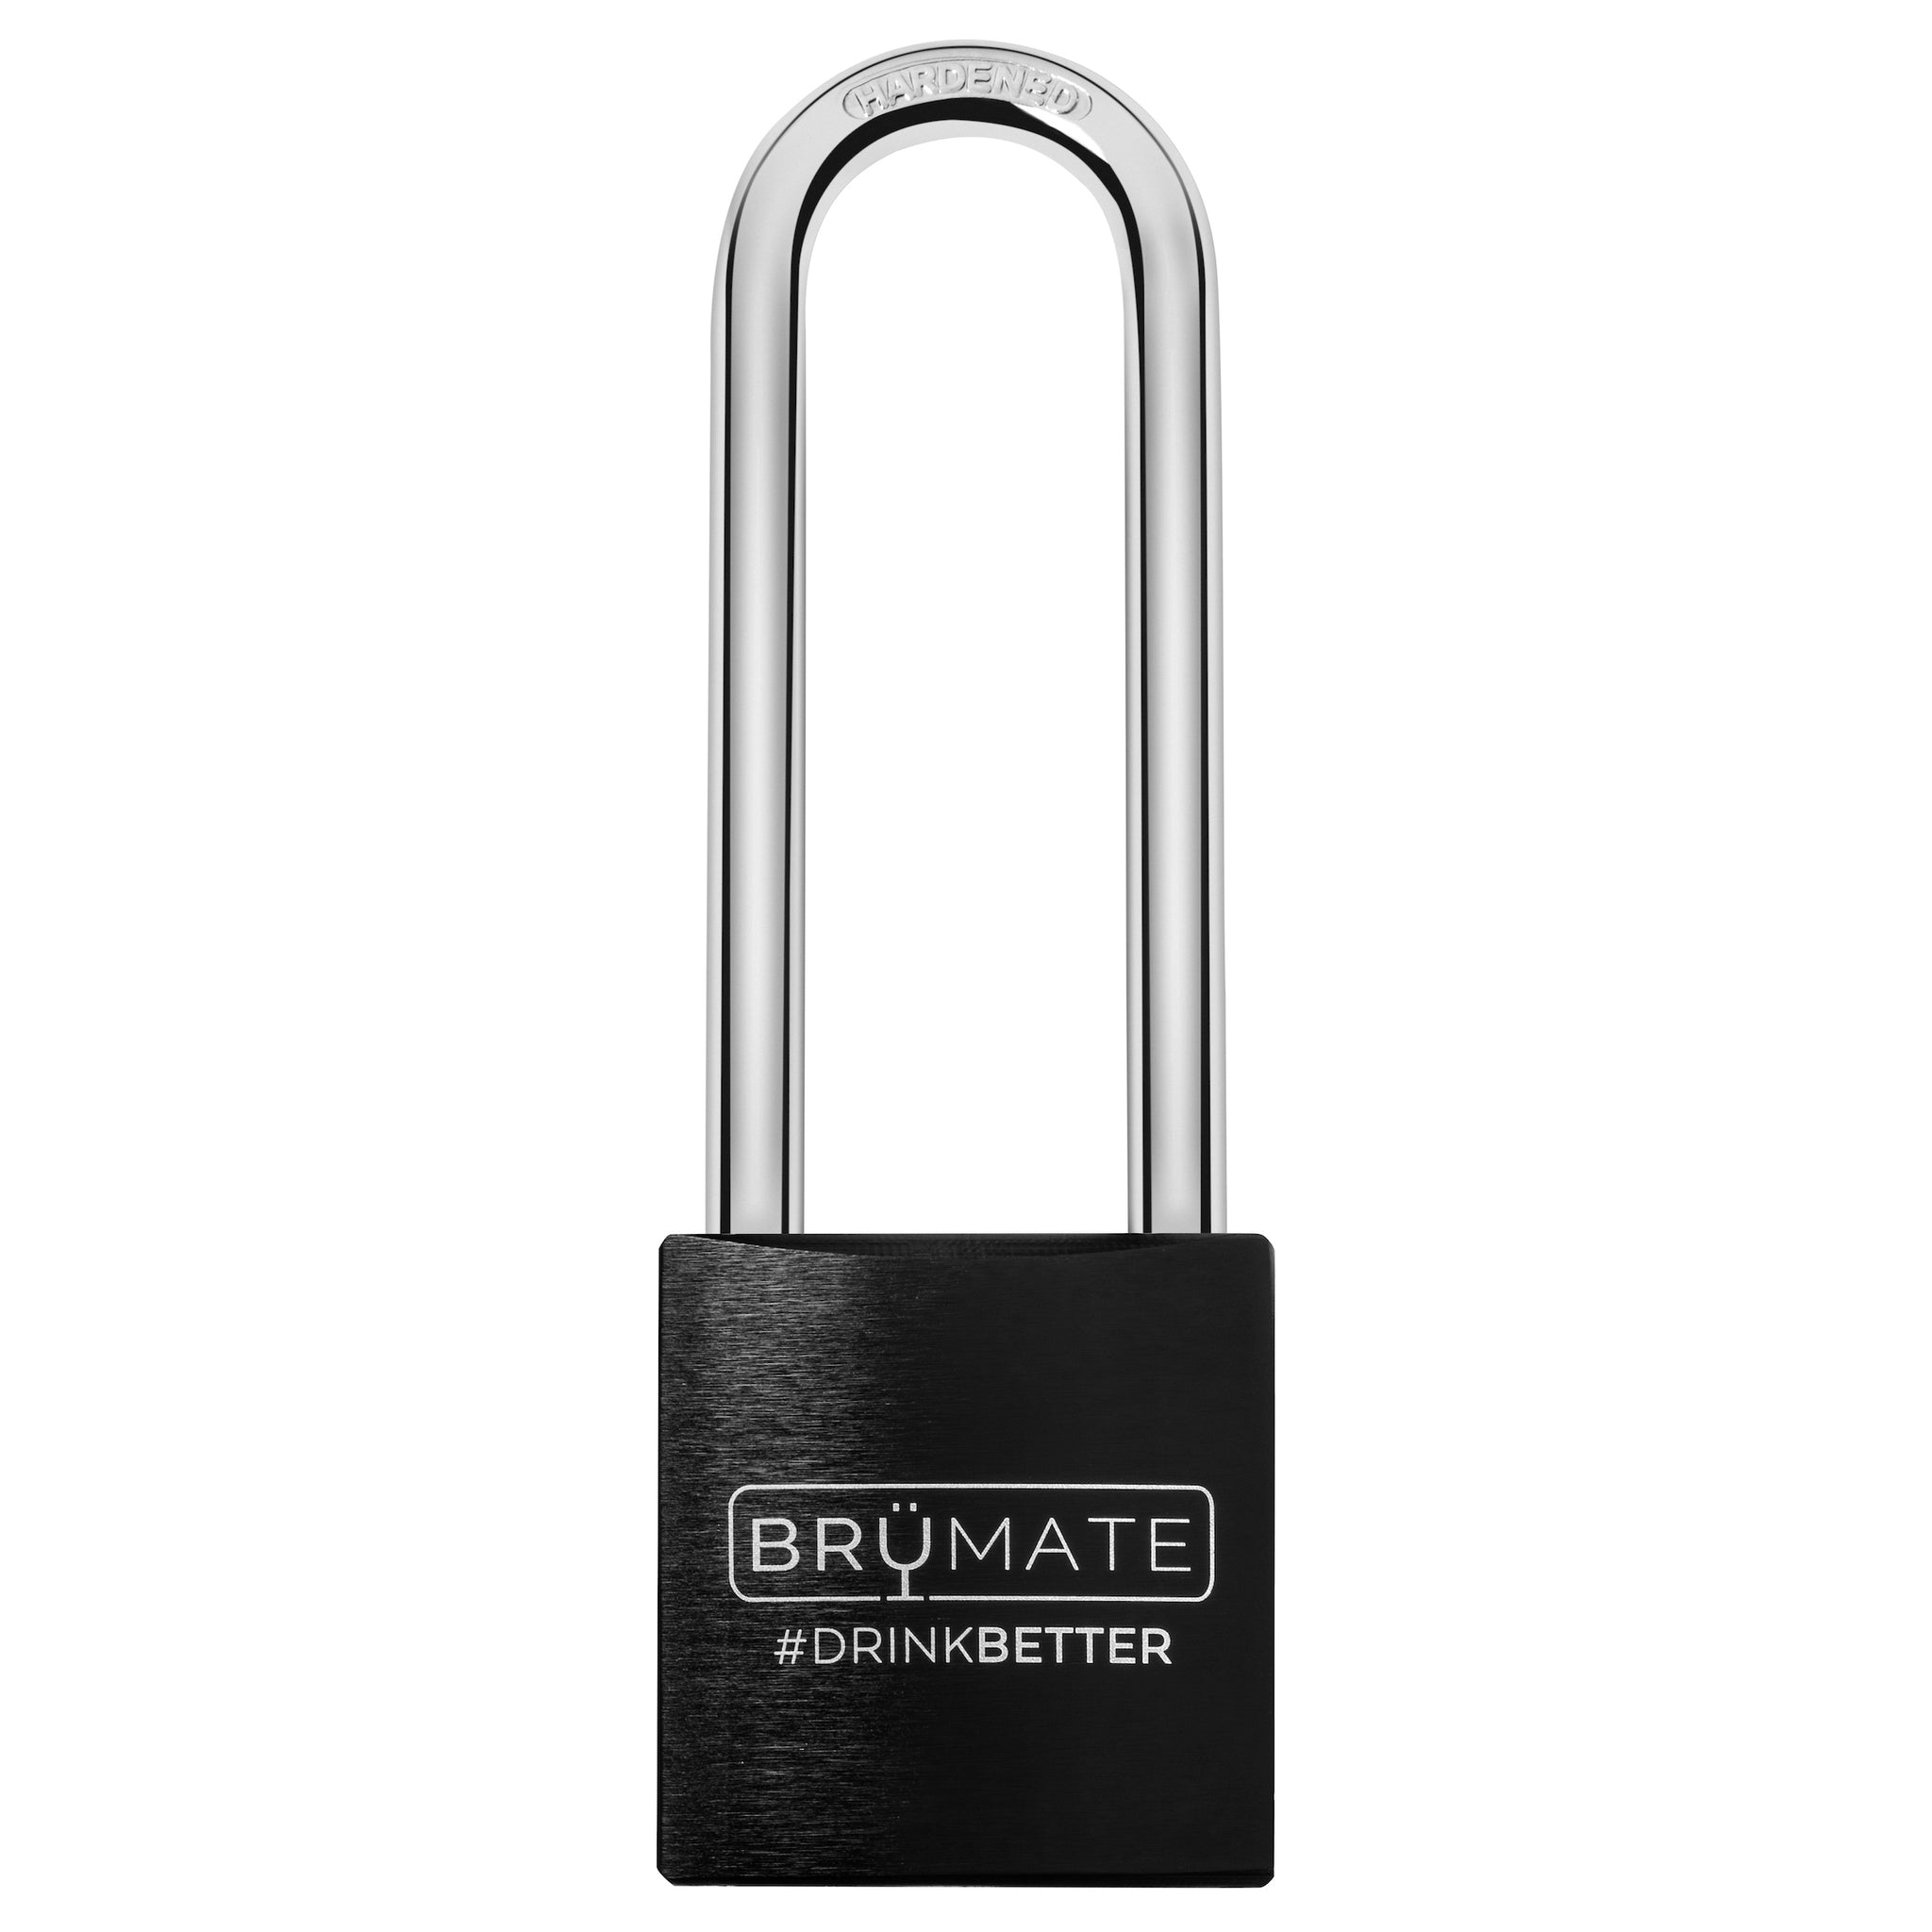 BrüTank Lock